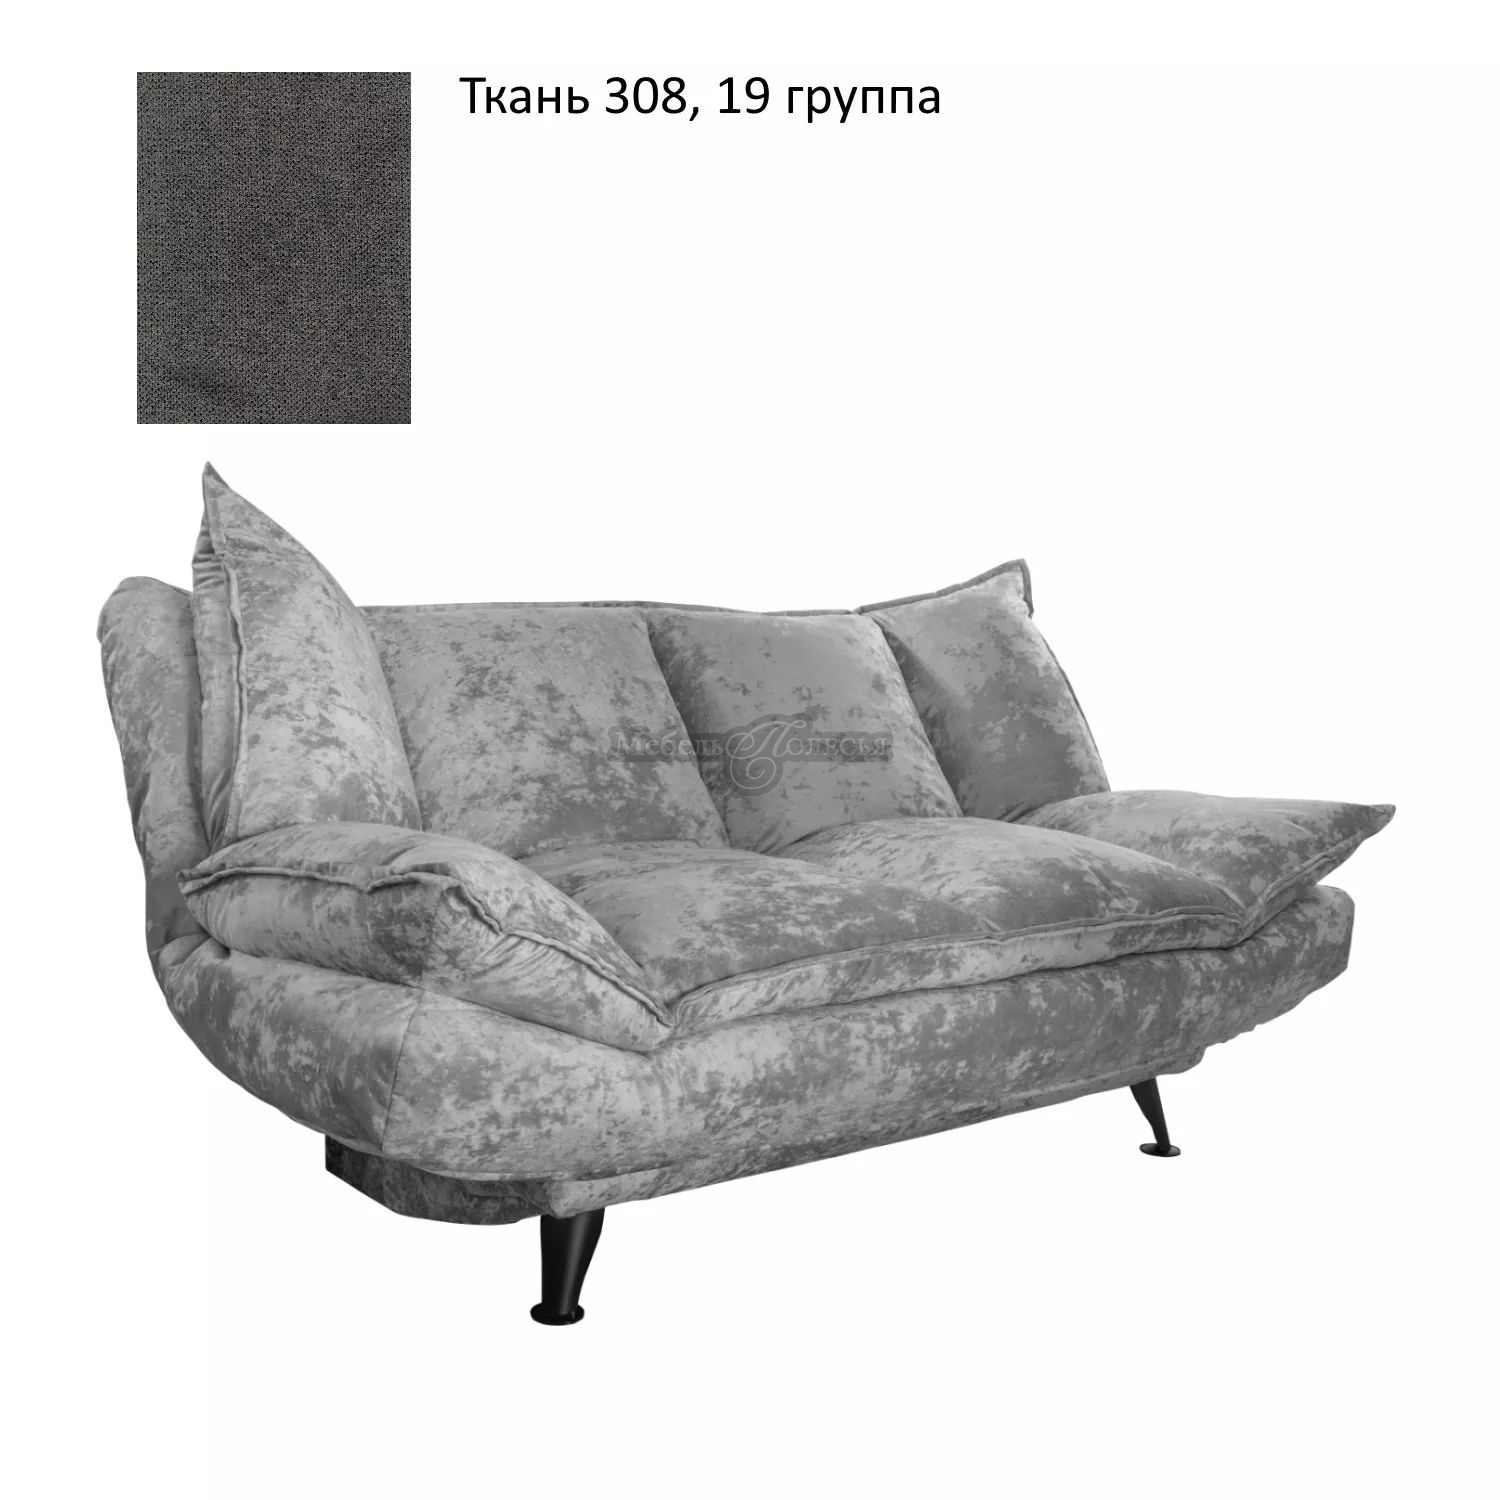 Трехместный диван-кровать Андарак-3 в ткани (3м) купить в Москве отпроизводителя Пинскдрев - Белорусская мебель от Мебель Полесья.